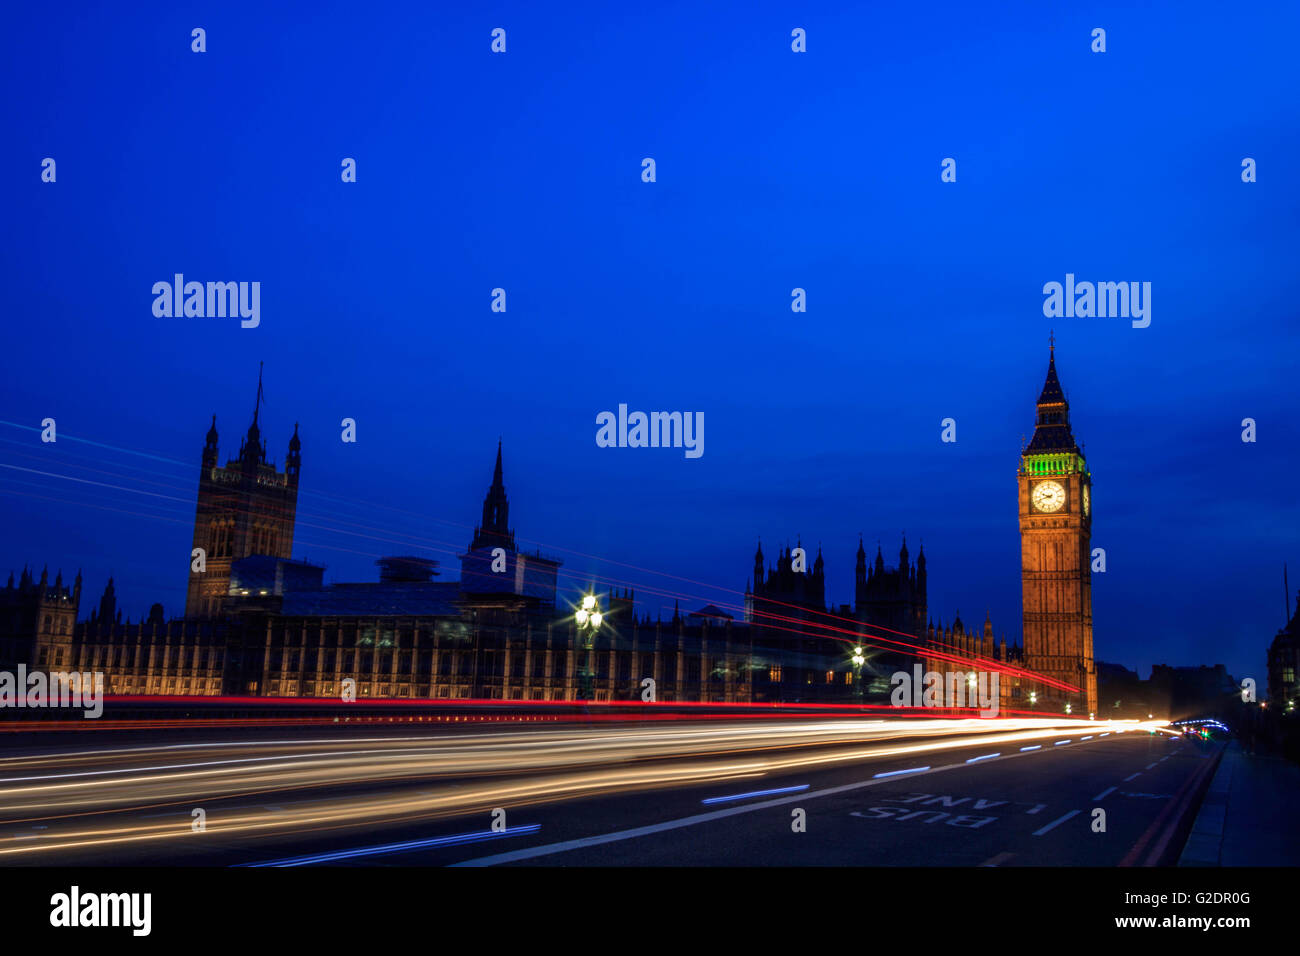 Palast von Westminster in London und dem Big Ben in der Nacht mit Fahrzeug hinterließ eine Schneise entlang der Straße, mit einem klaren blauen Himmel. Stockfoto